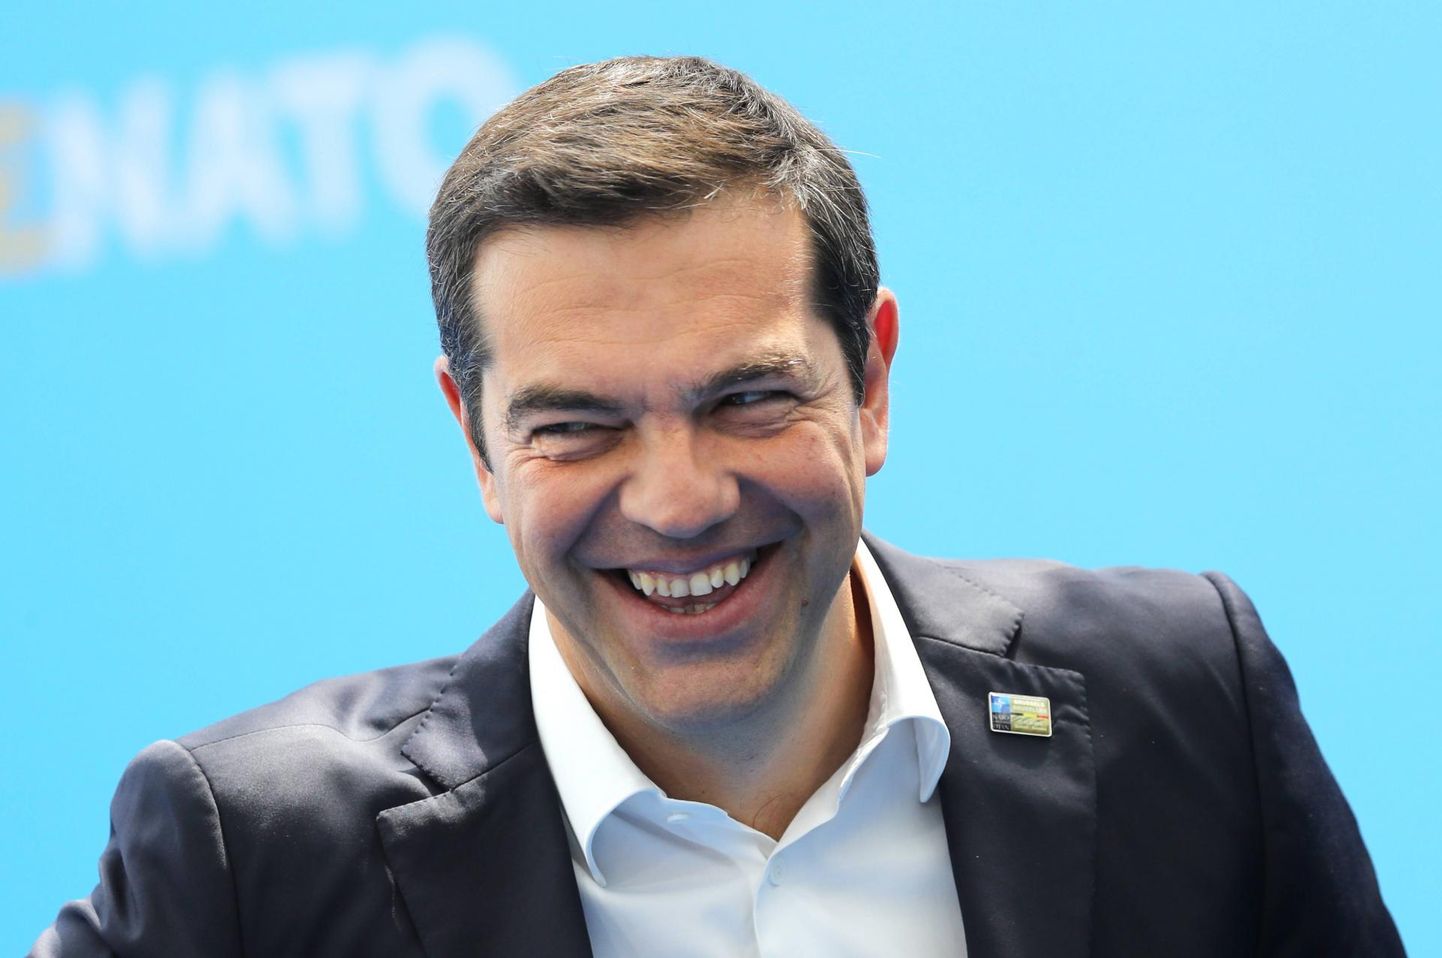 Kreeka peaministril Alexis Tsiprasel on üle hulga aja oma rahvale häid uudiseid.